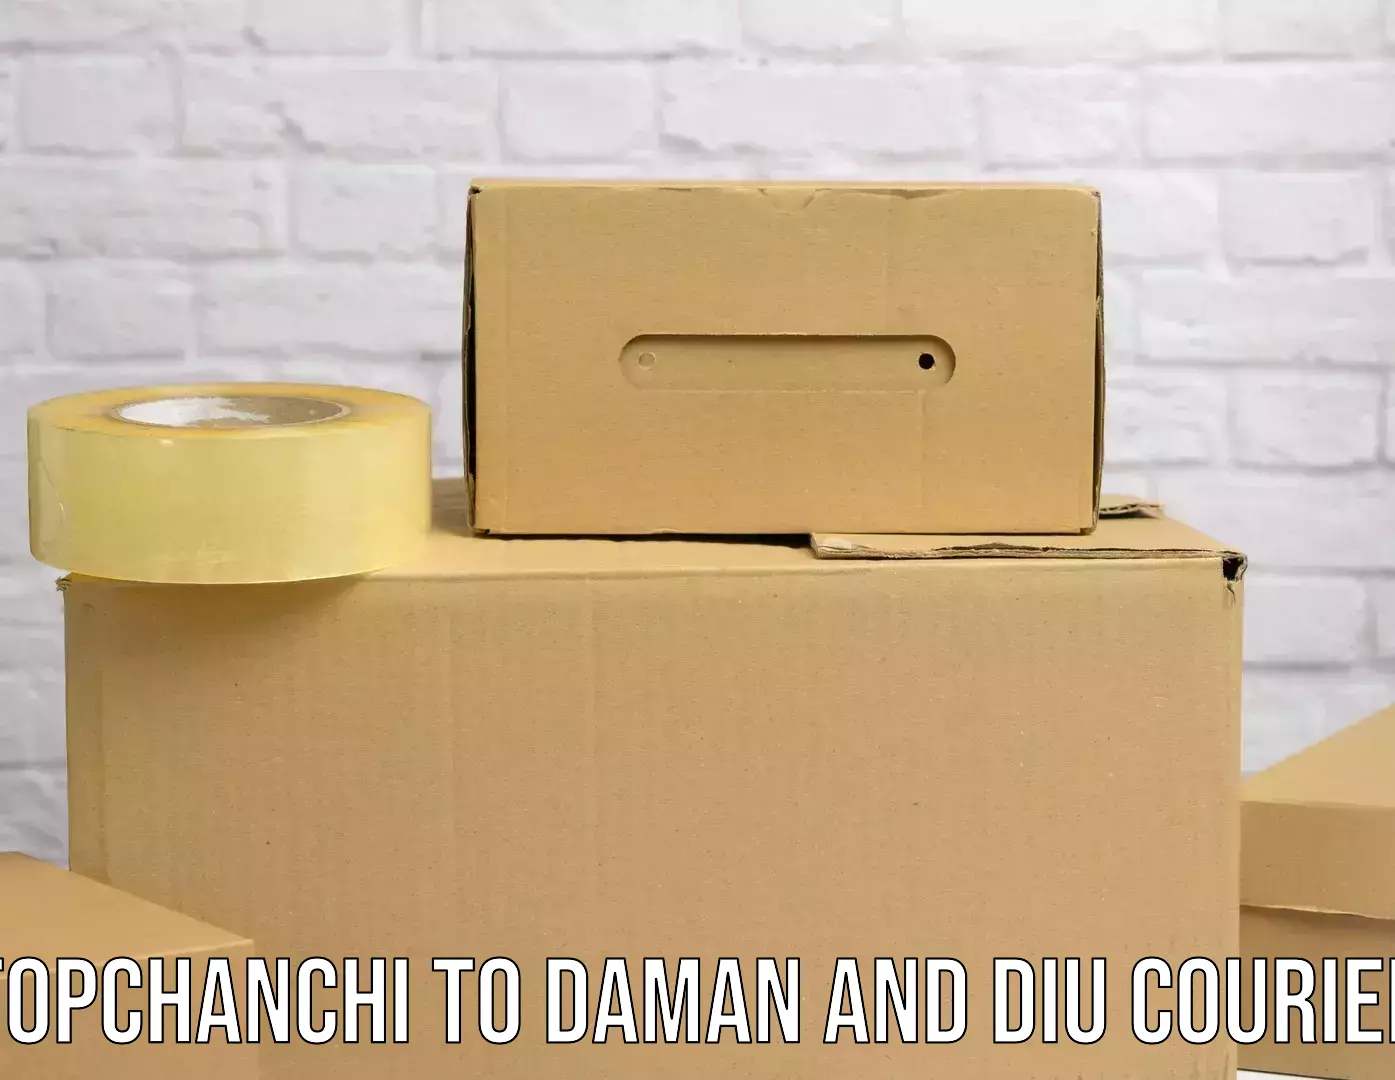 E-commerce shipping partnerships Topchanchi to Daman